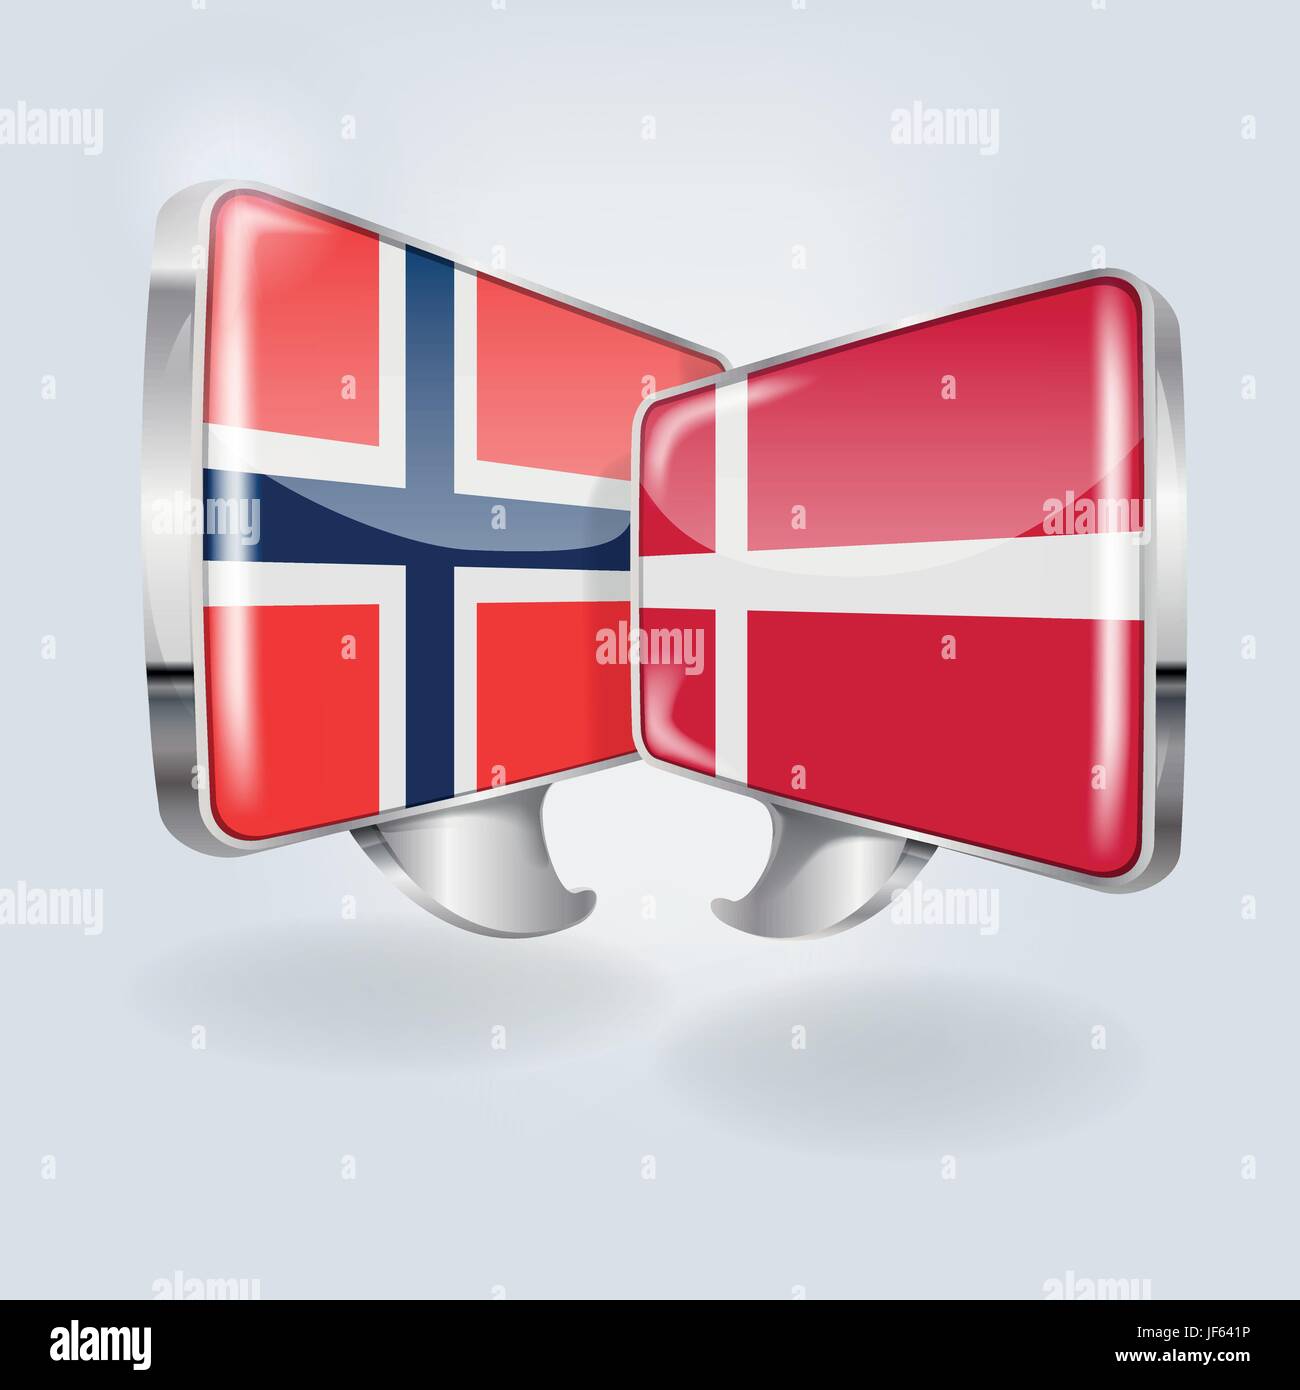 speech in norwegian and danish Stock Vector